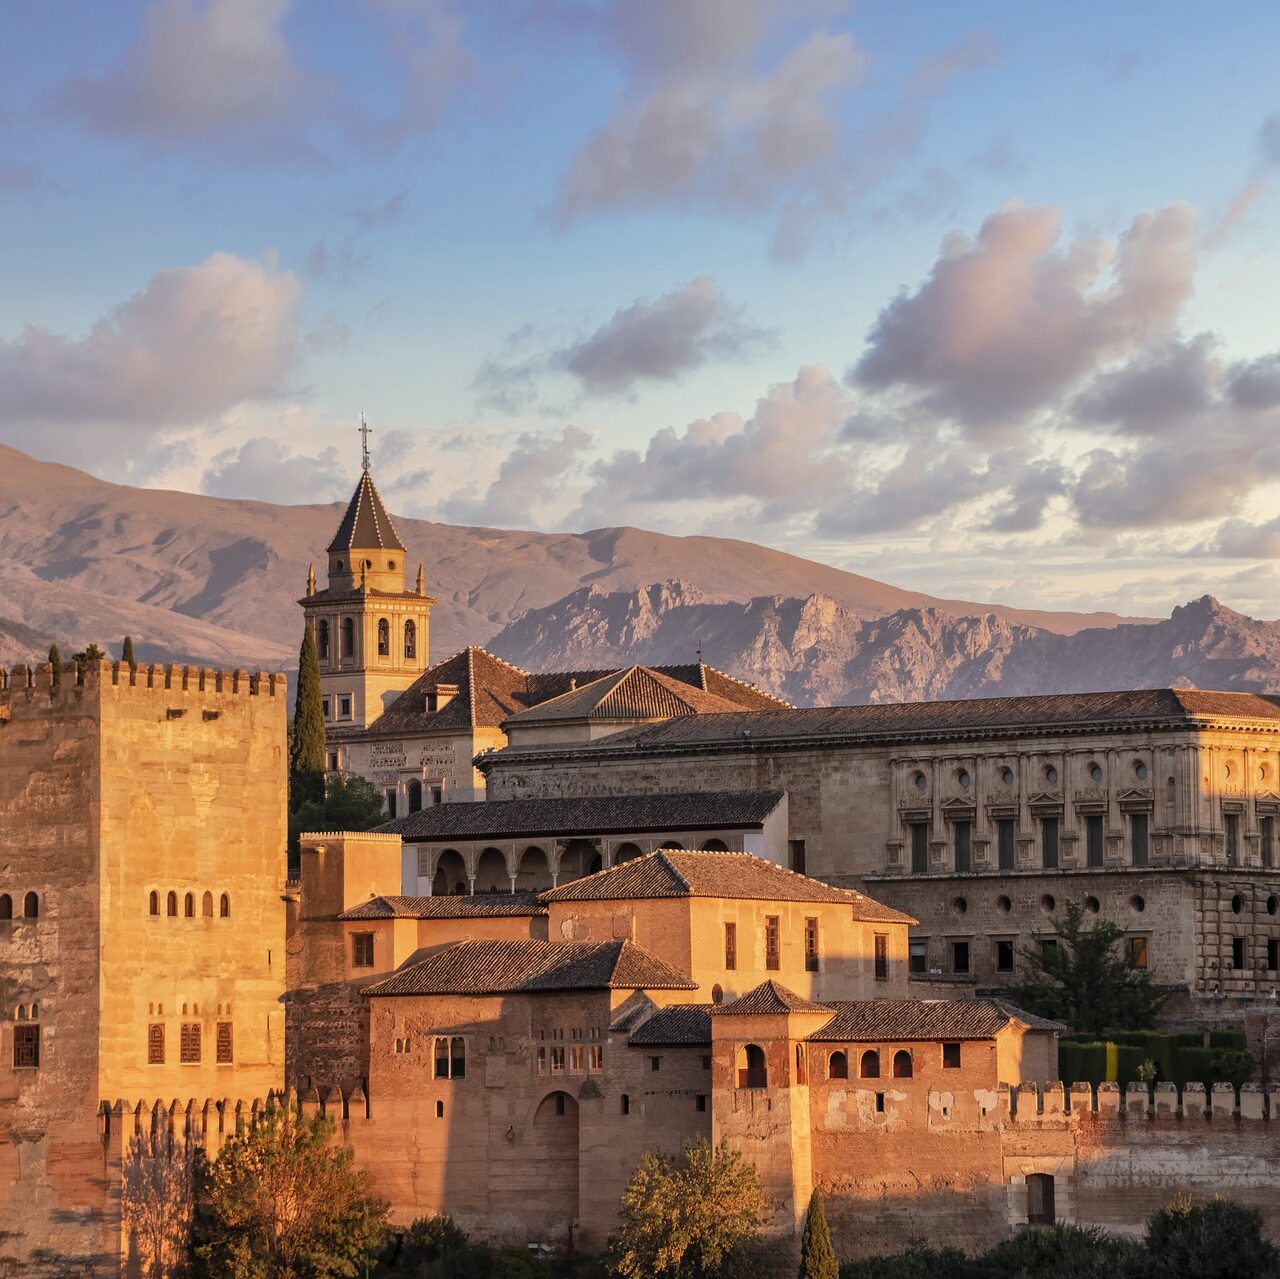 Comprar tickets Alhambra, Palacios Nazaries, Jardines Generalife, Alcazaba y Alrededores